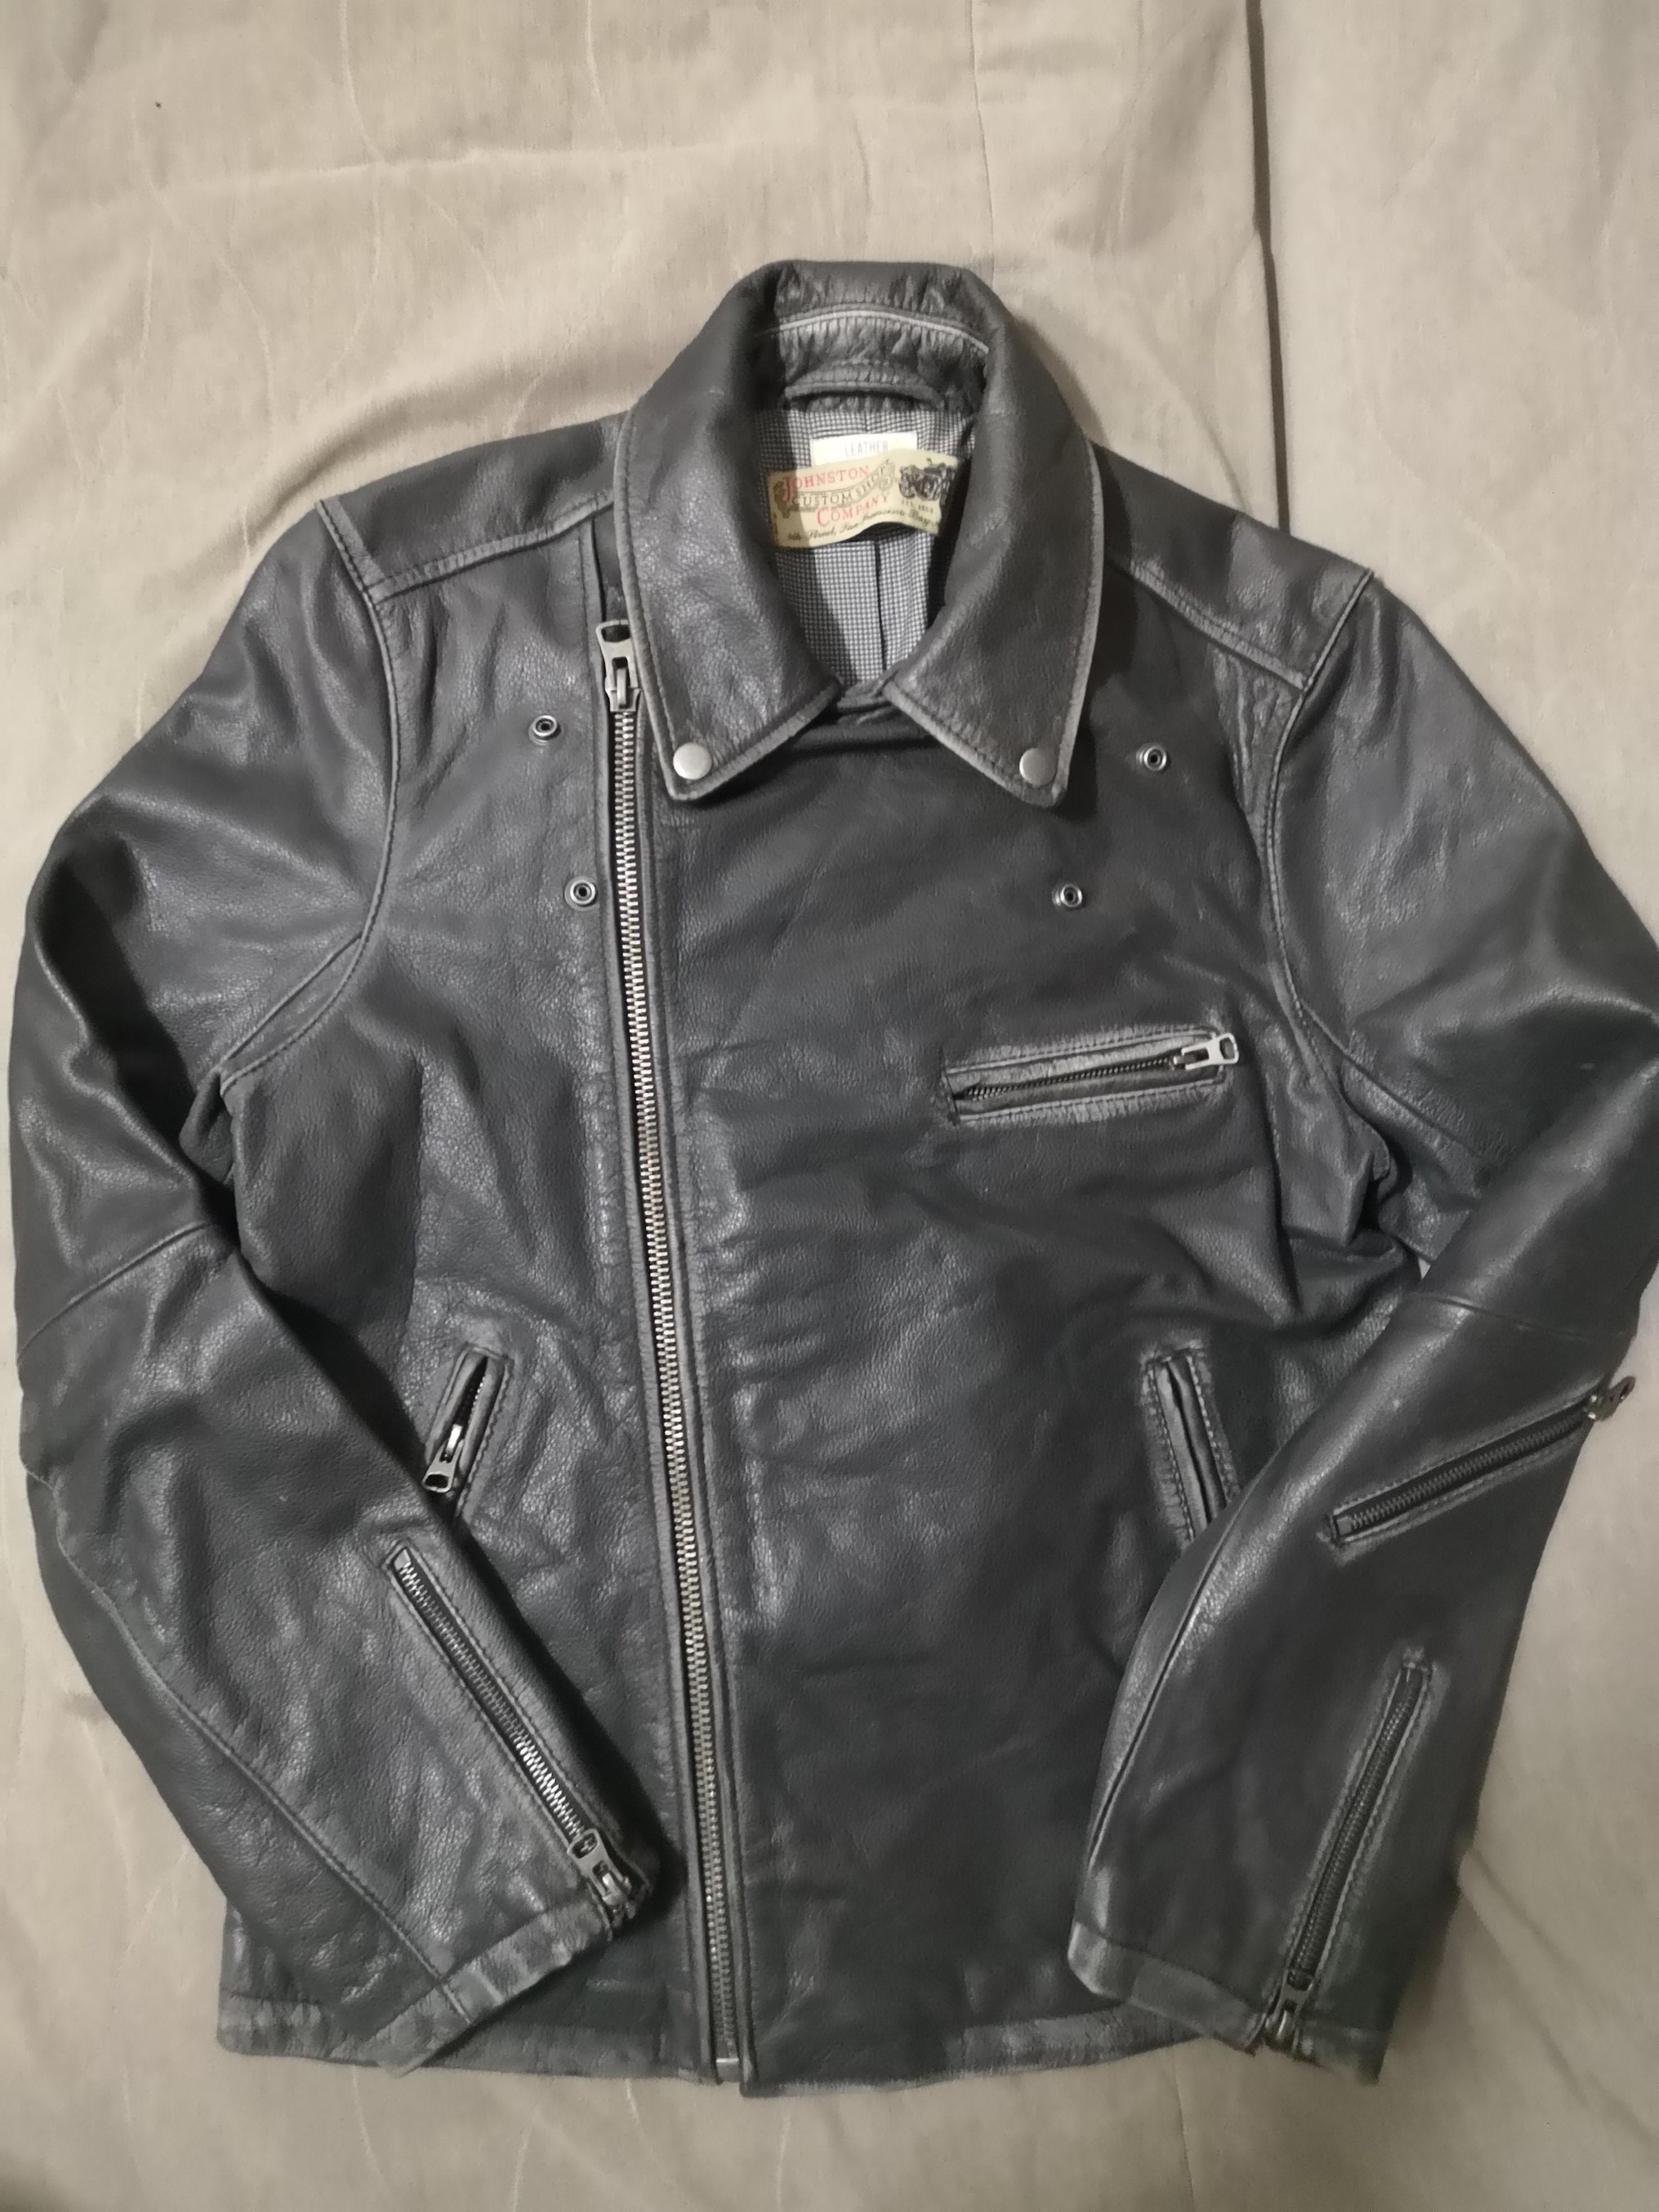 H&m genuine leather cafe racer jacket, Men's Fashion, Tops & Sets ...